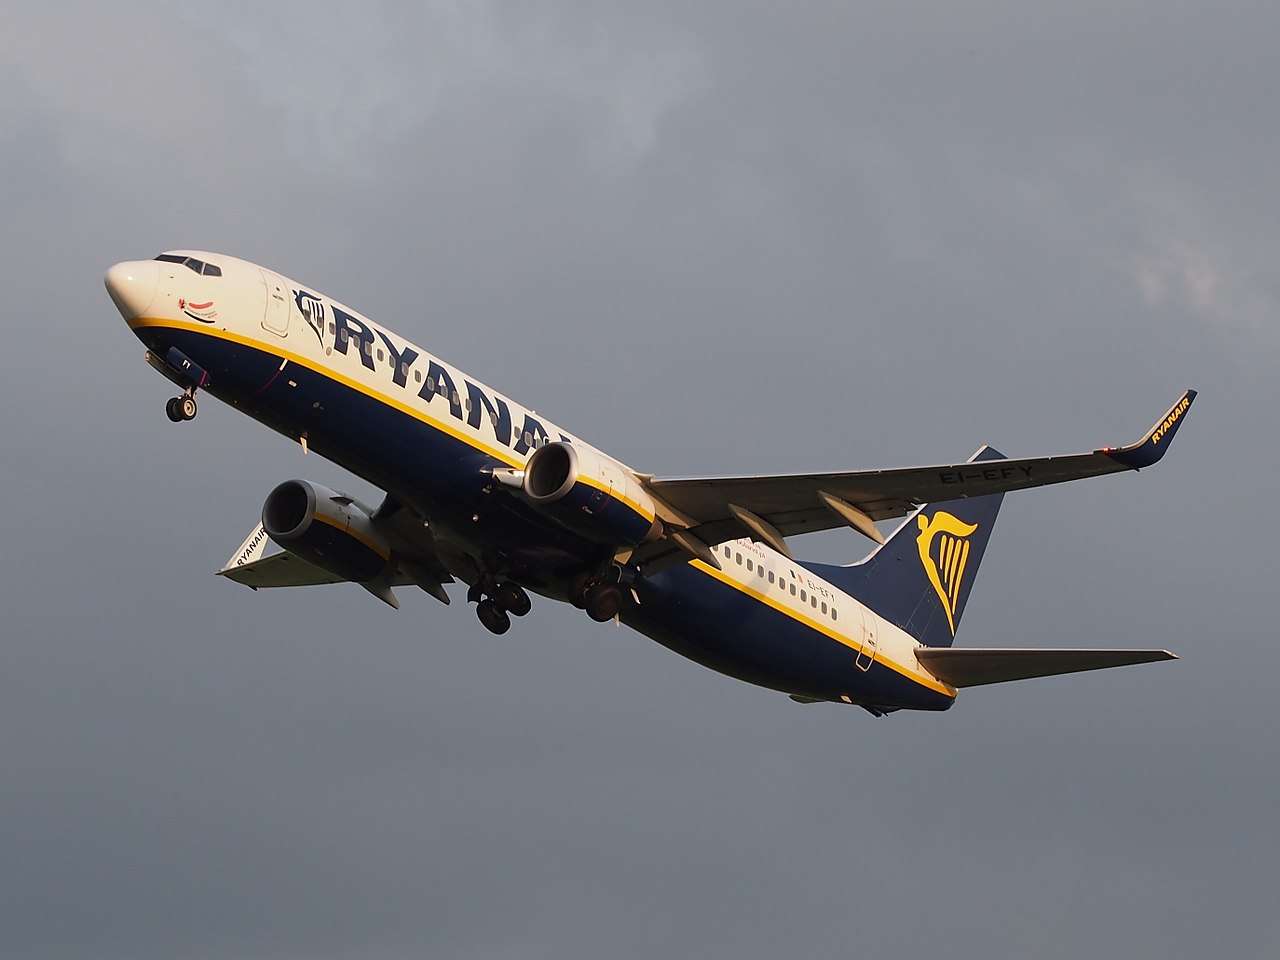 A Ryanair Boeing 737 climbs in an overcast sky.